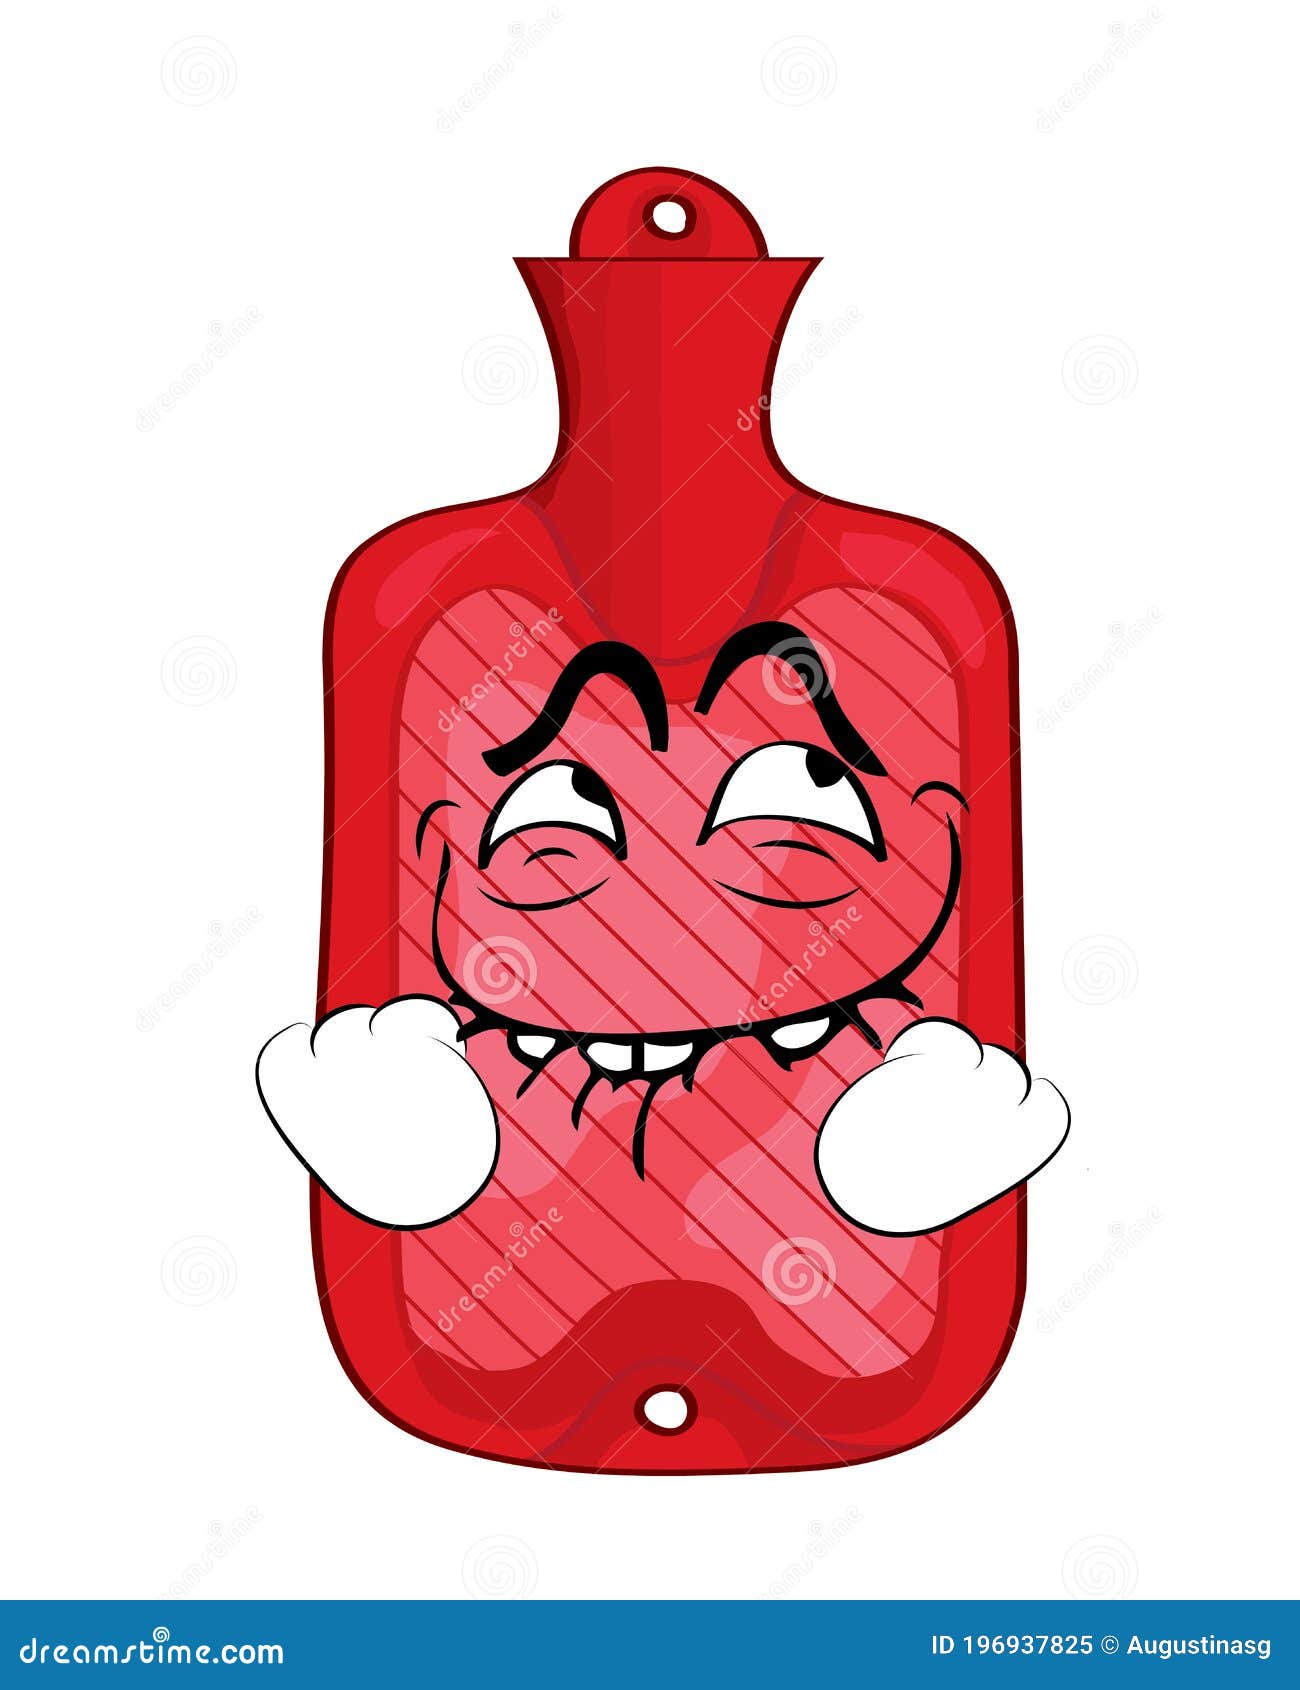 Comic Internet Meme Illustration of Rubber Hot Water Bottle Stock  Illustration - Illustration of cosy, bottle: 196937825